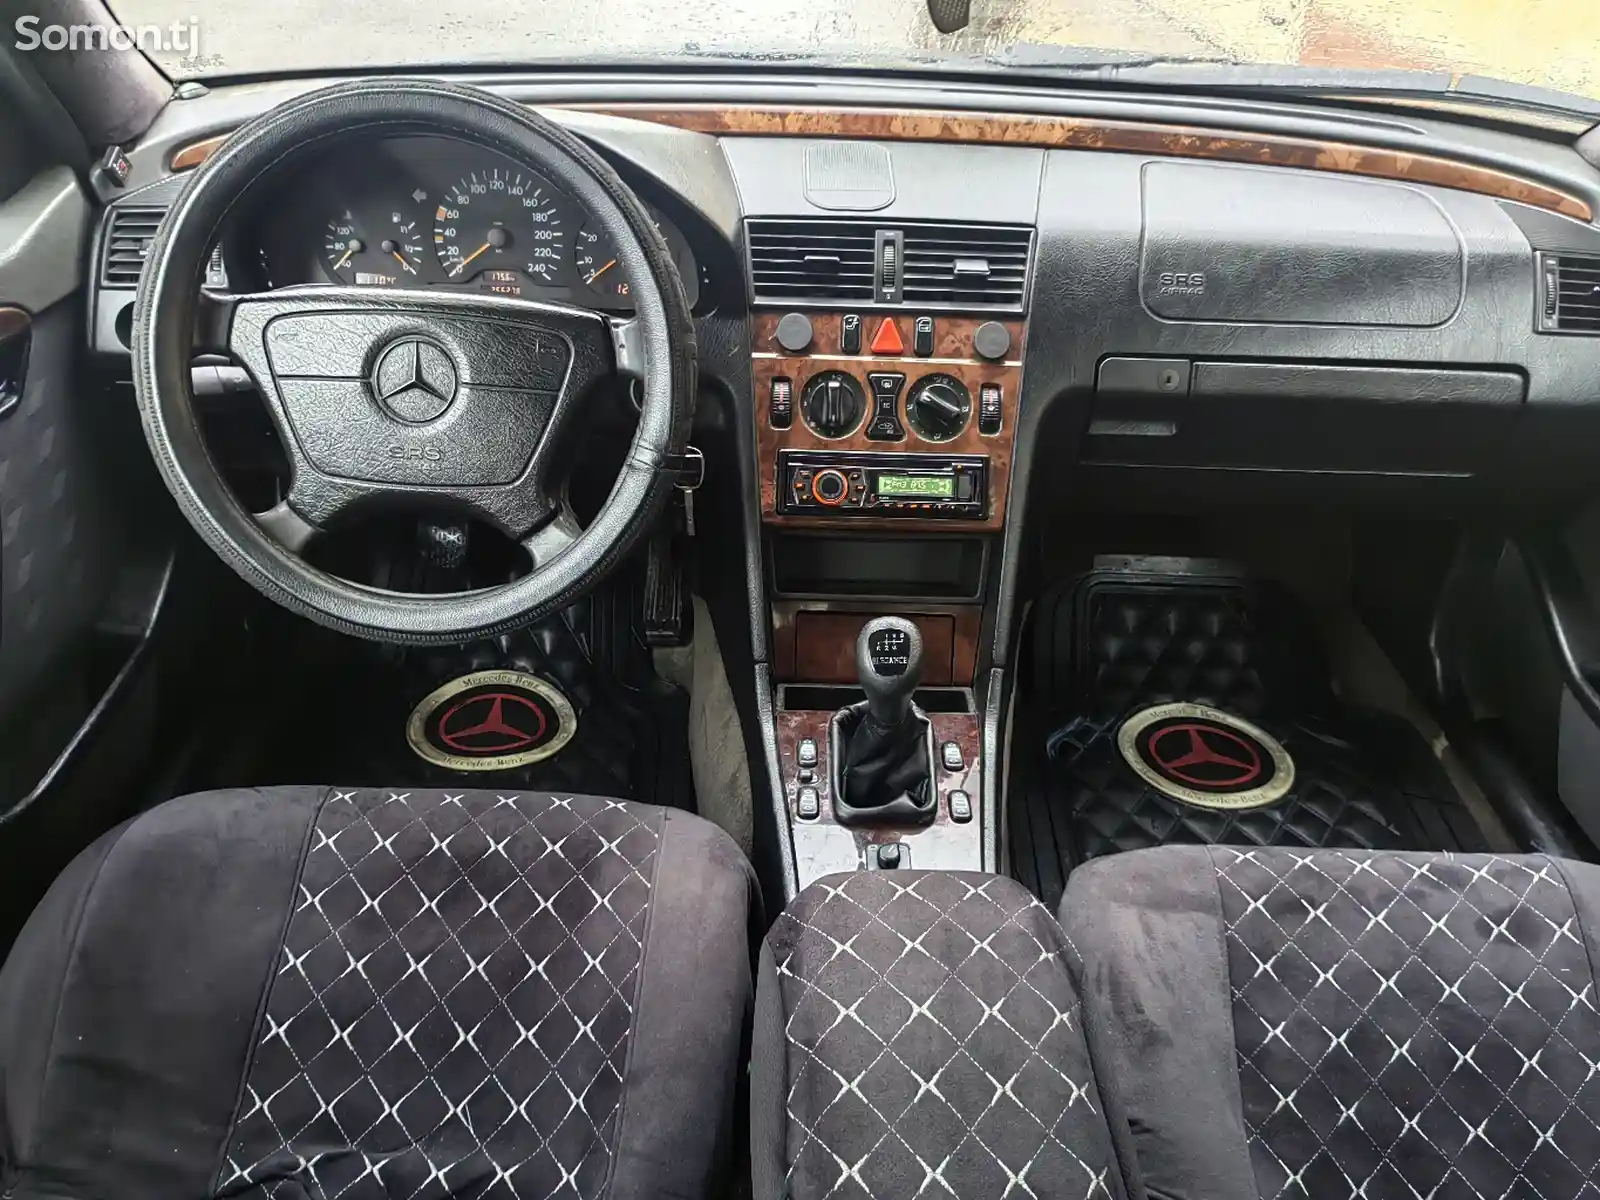 Mercedes-Benz C class, 1997-6